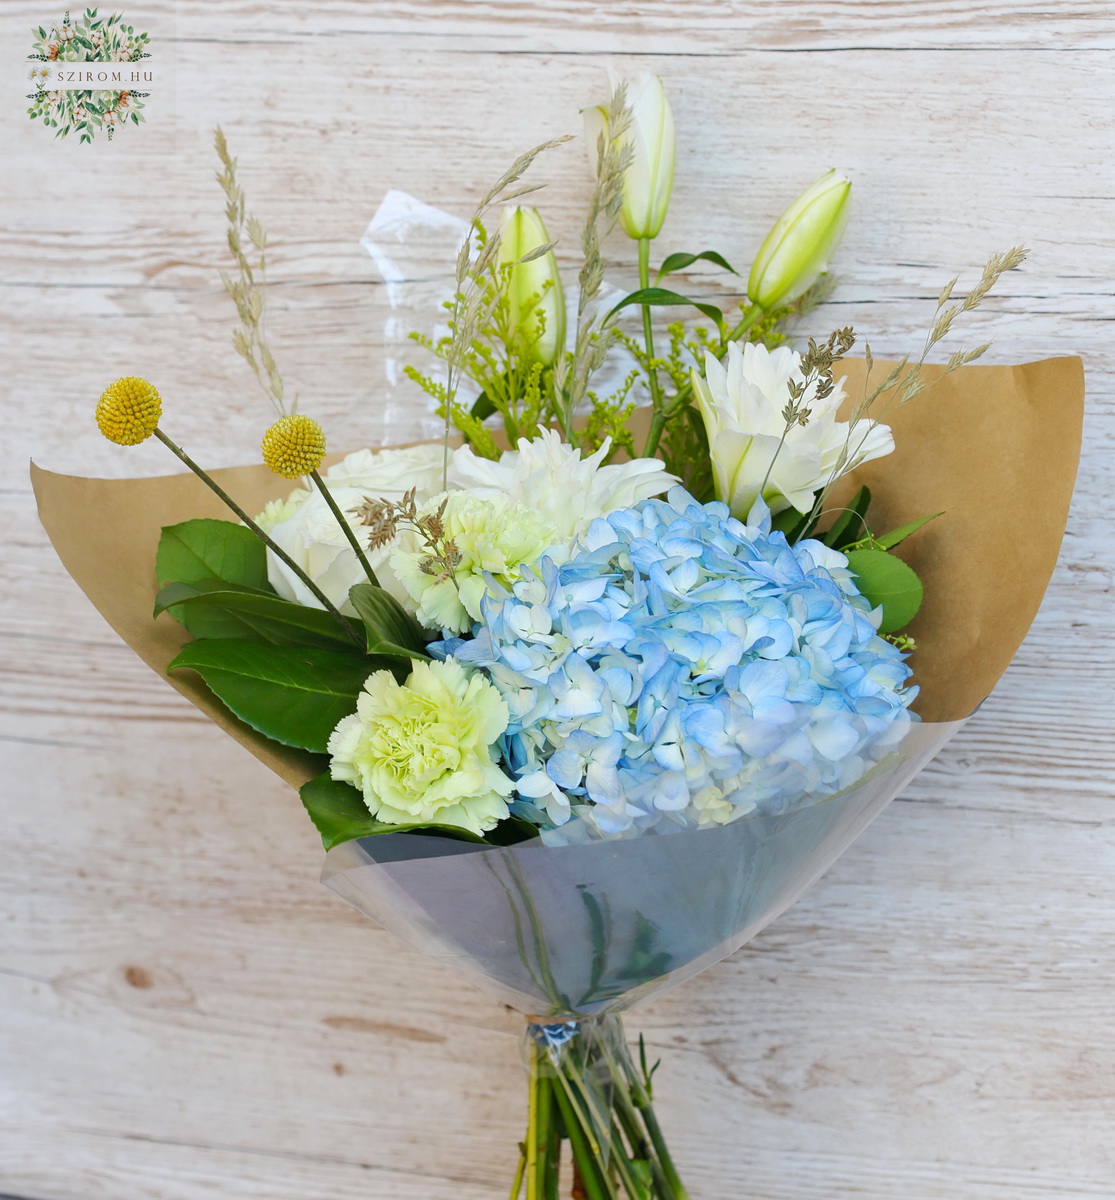 Blumenlieferung nach Budapest - Blau-weißer Strauß mit Hortensie